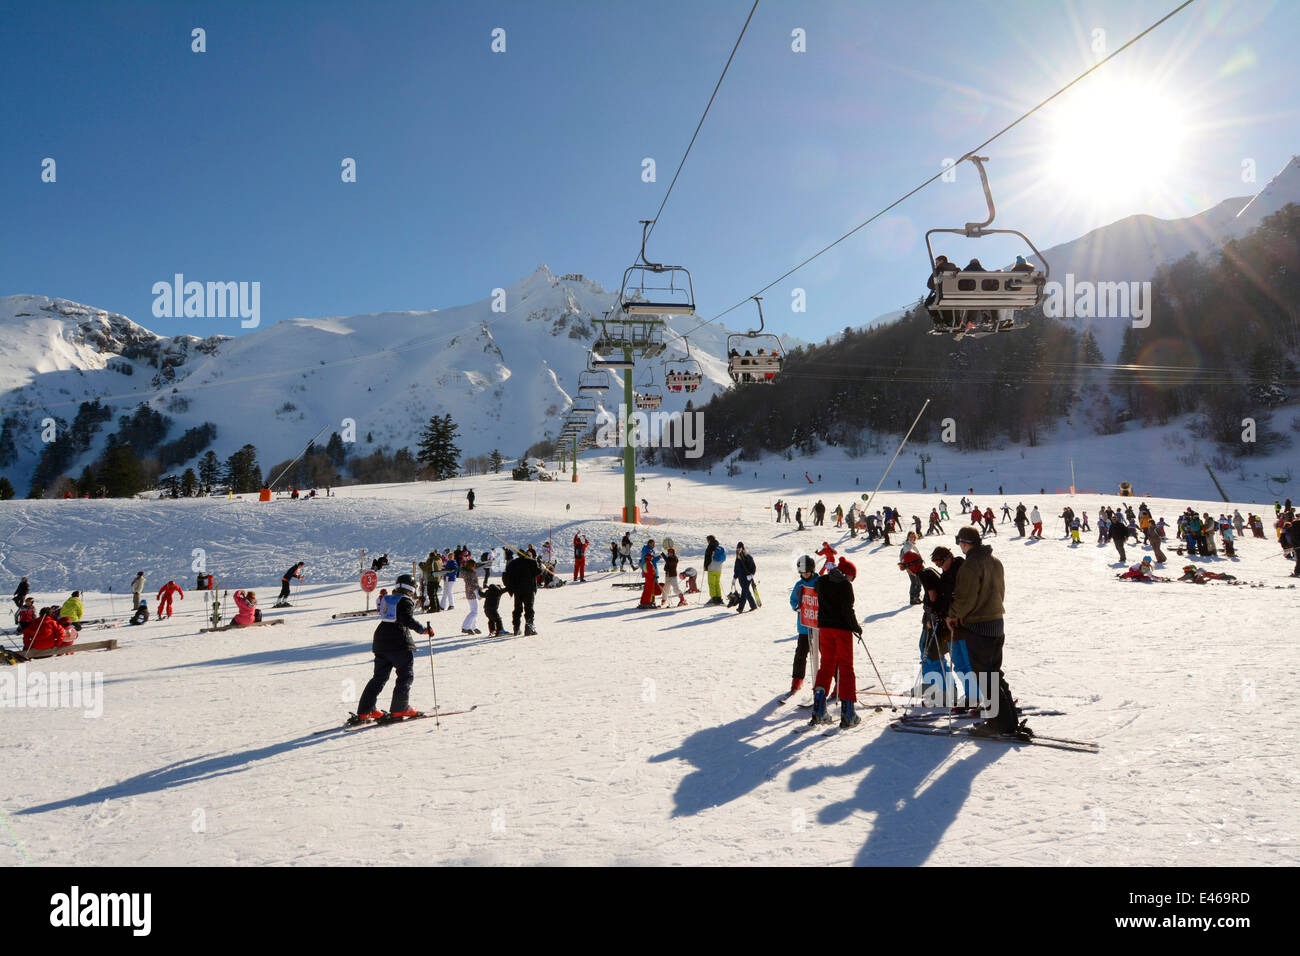 Le Mont Dore ski resort, Massif du Sancy, Auvergne, France Stock Photo